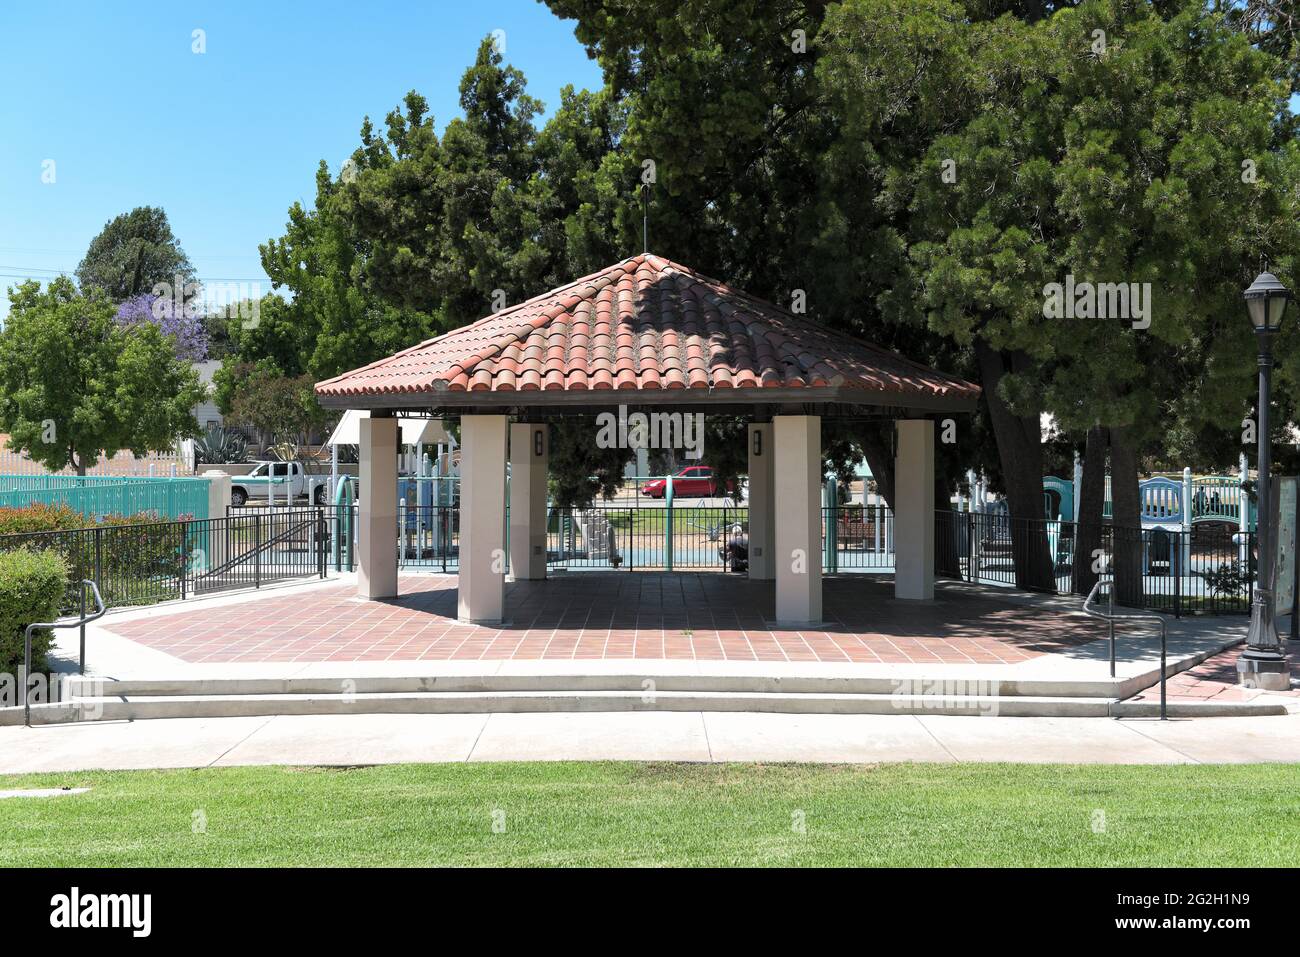 BREA, CALIFORNIE - 9 JUIN 2021 : le kiosque Ralph Barns dans le parc de l'hôtel de ville, avec le terrain de jeu en arrière-plan. Banque D'Images